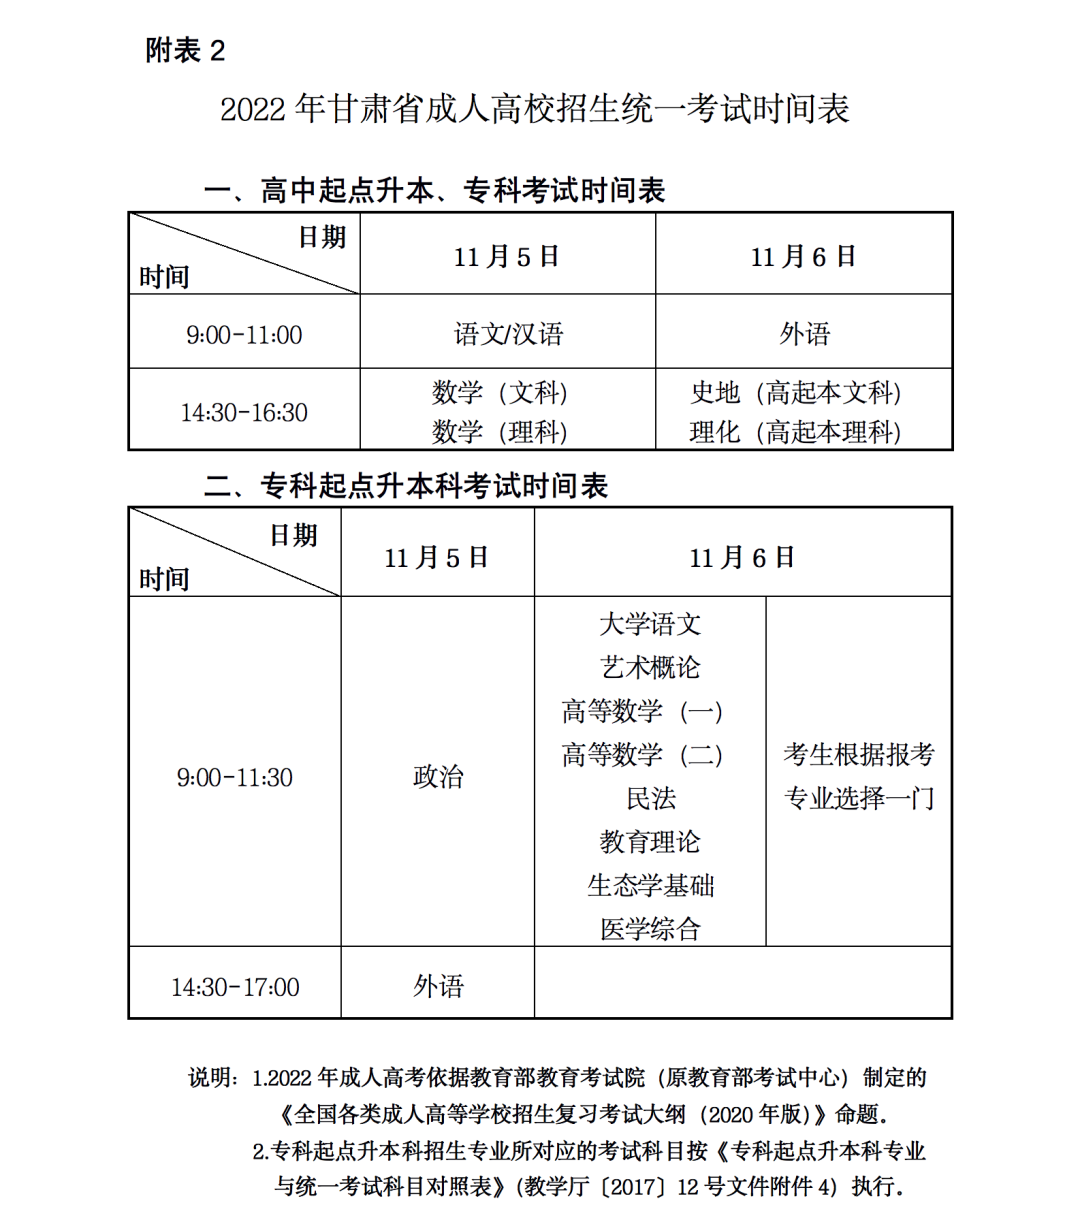 2022年甘肃成人高考报名时间定于9月5日至9日